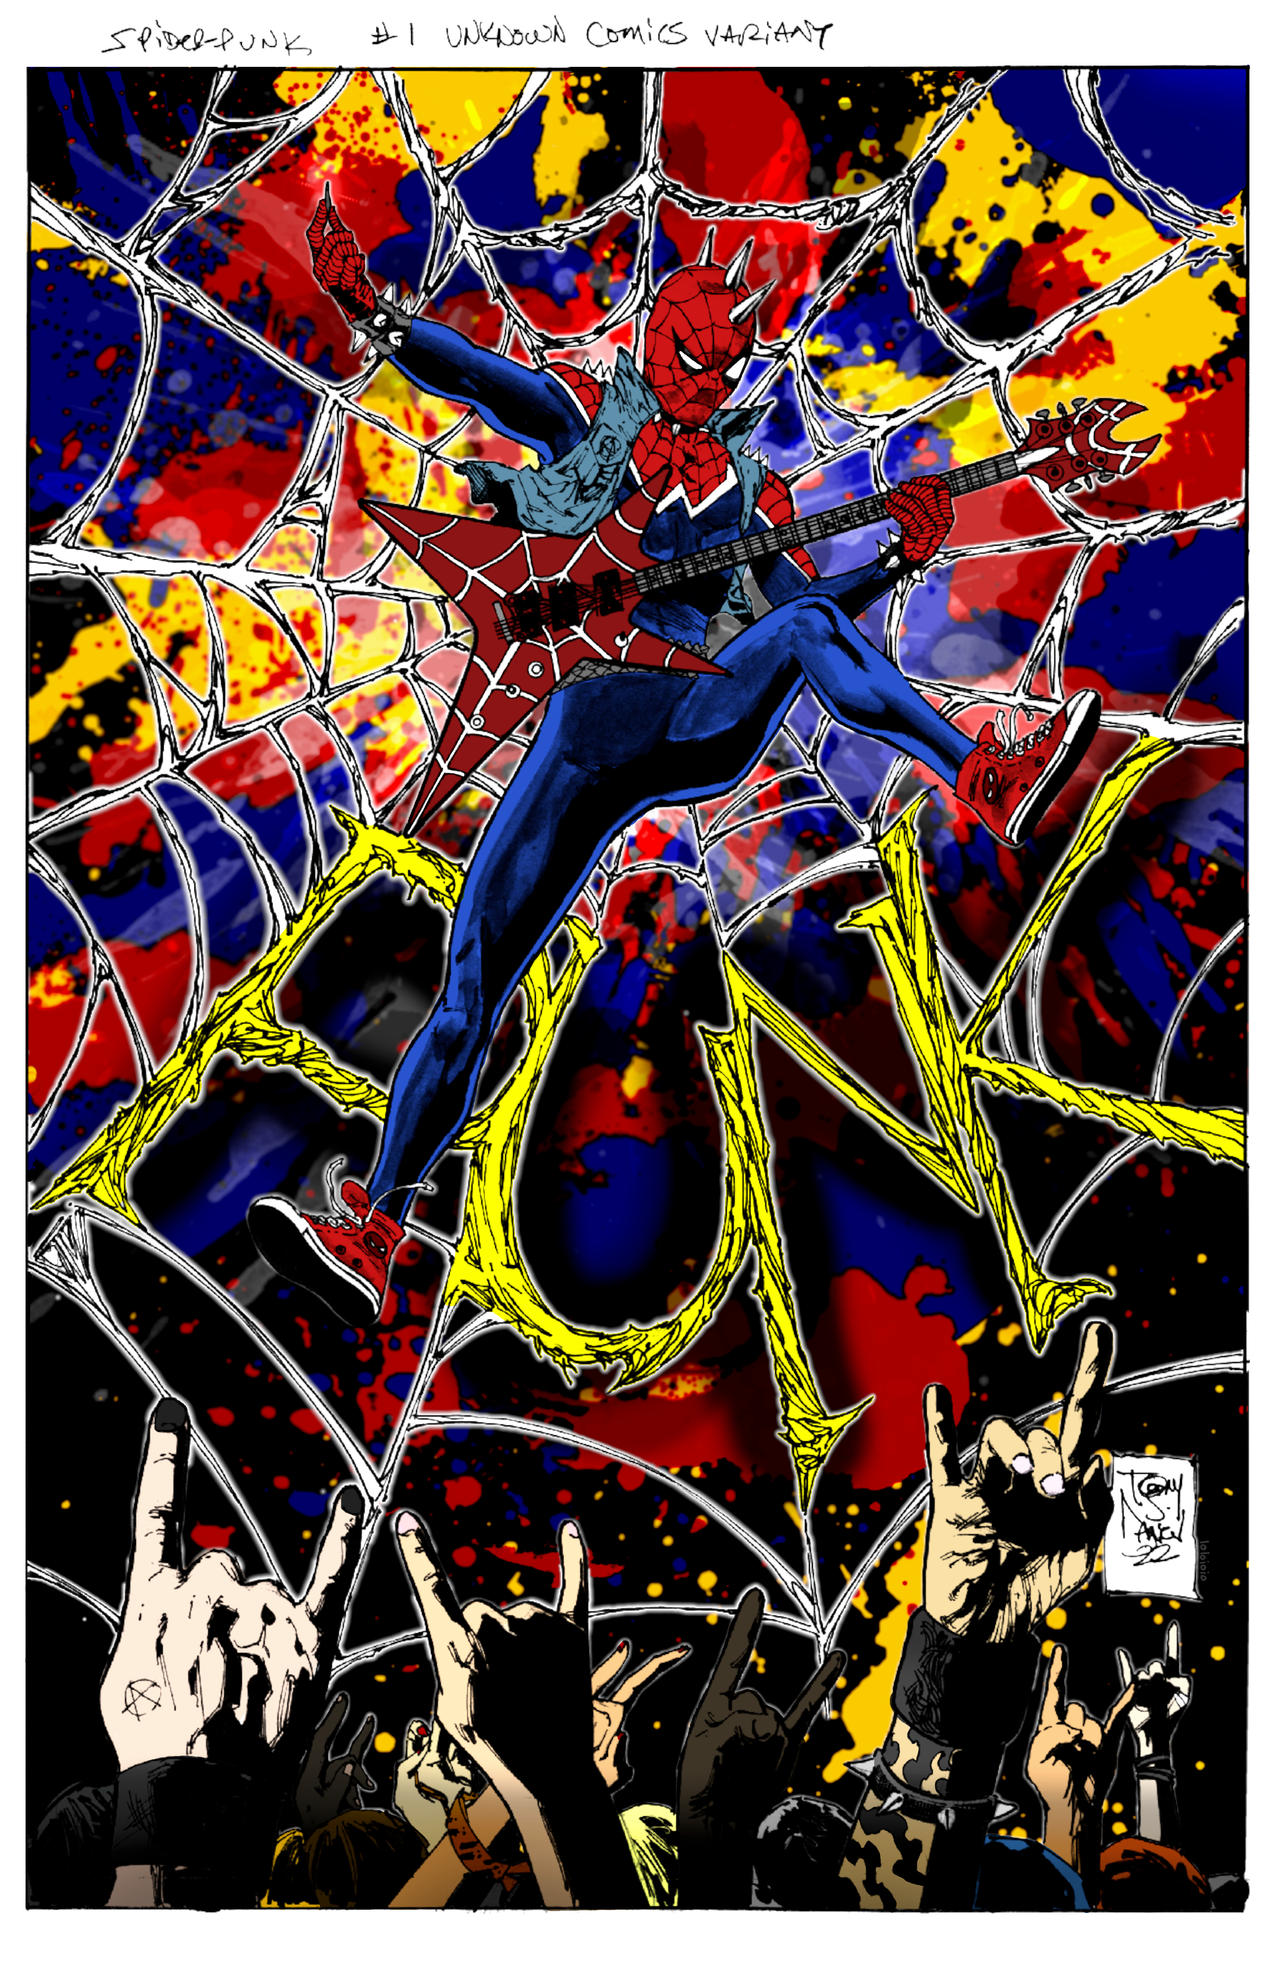 Spiderpunk, an art card by Art by Alana - INPRNT